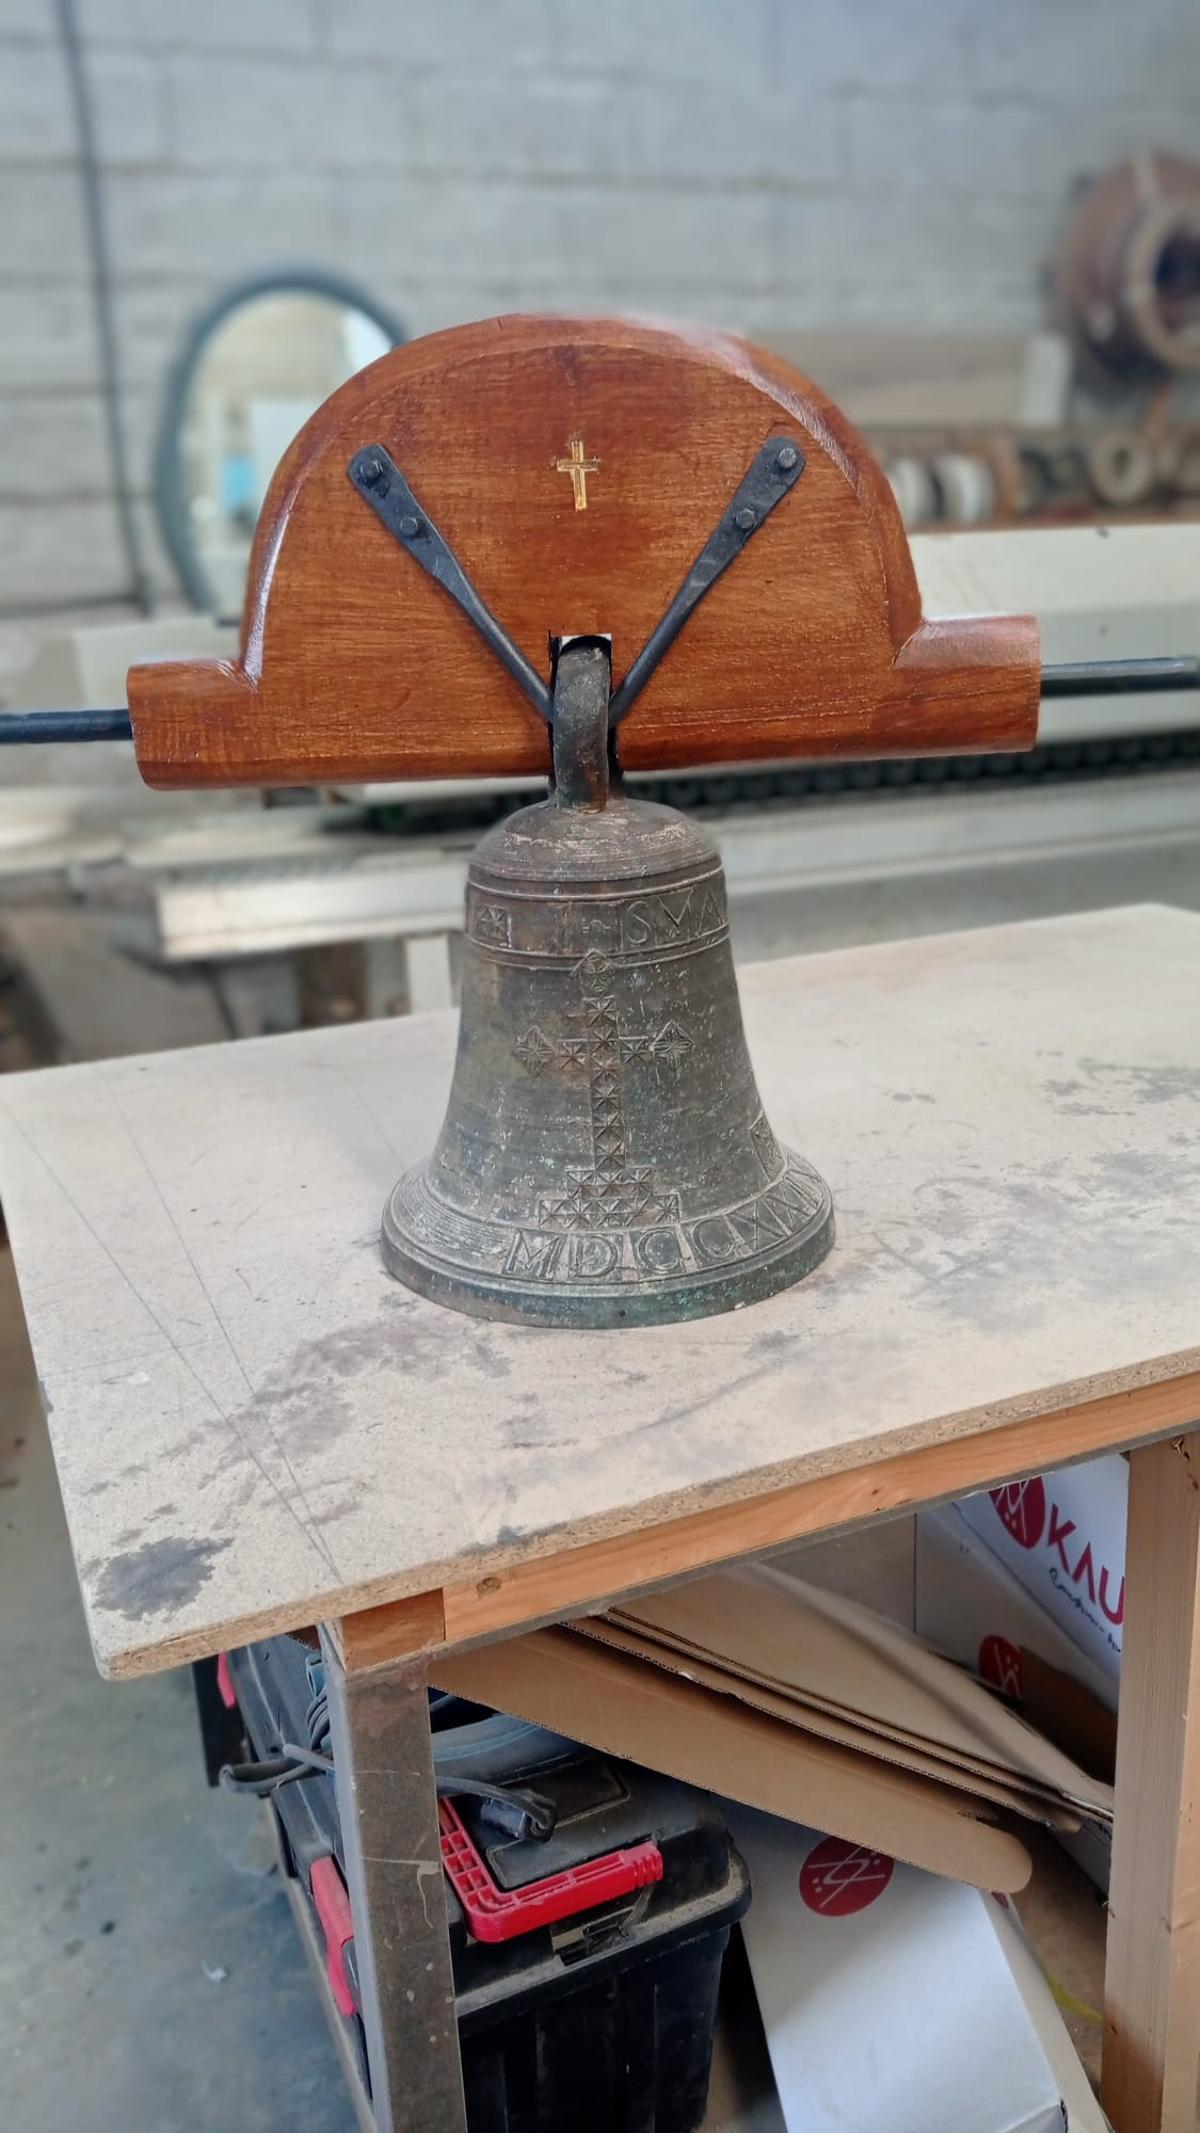 La campana, antes de instalarla, cuando se le colocó el yugo de madera para instalarla.